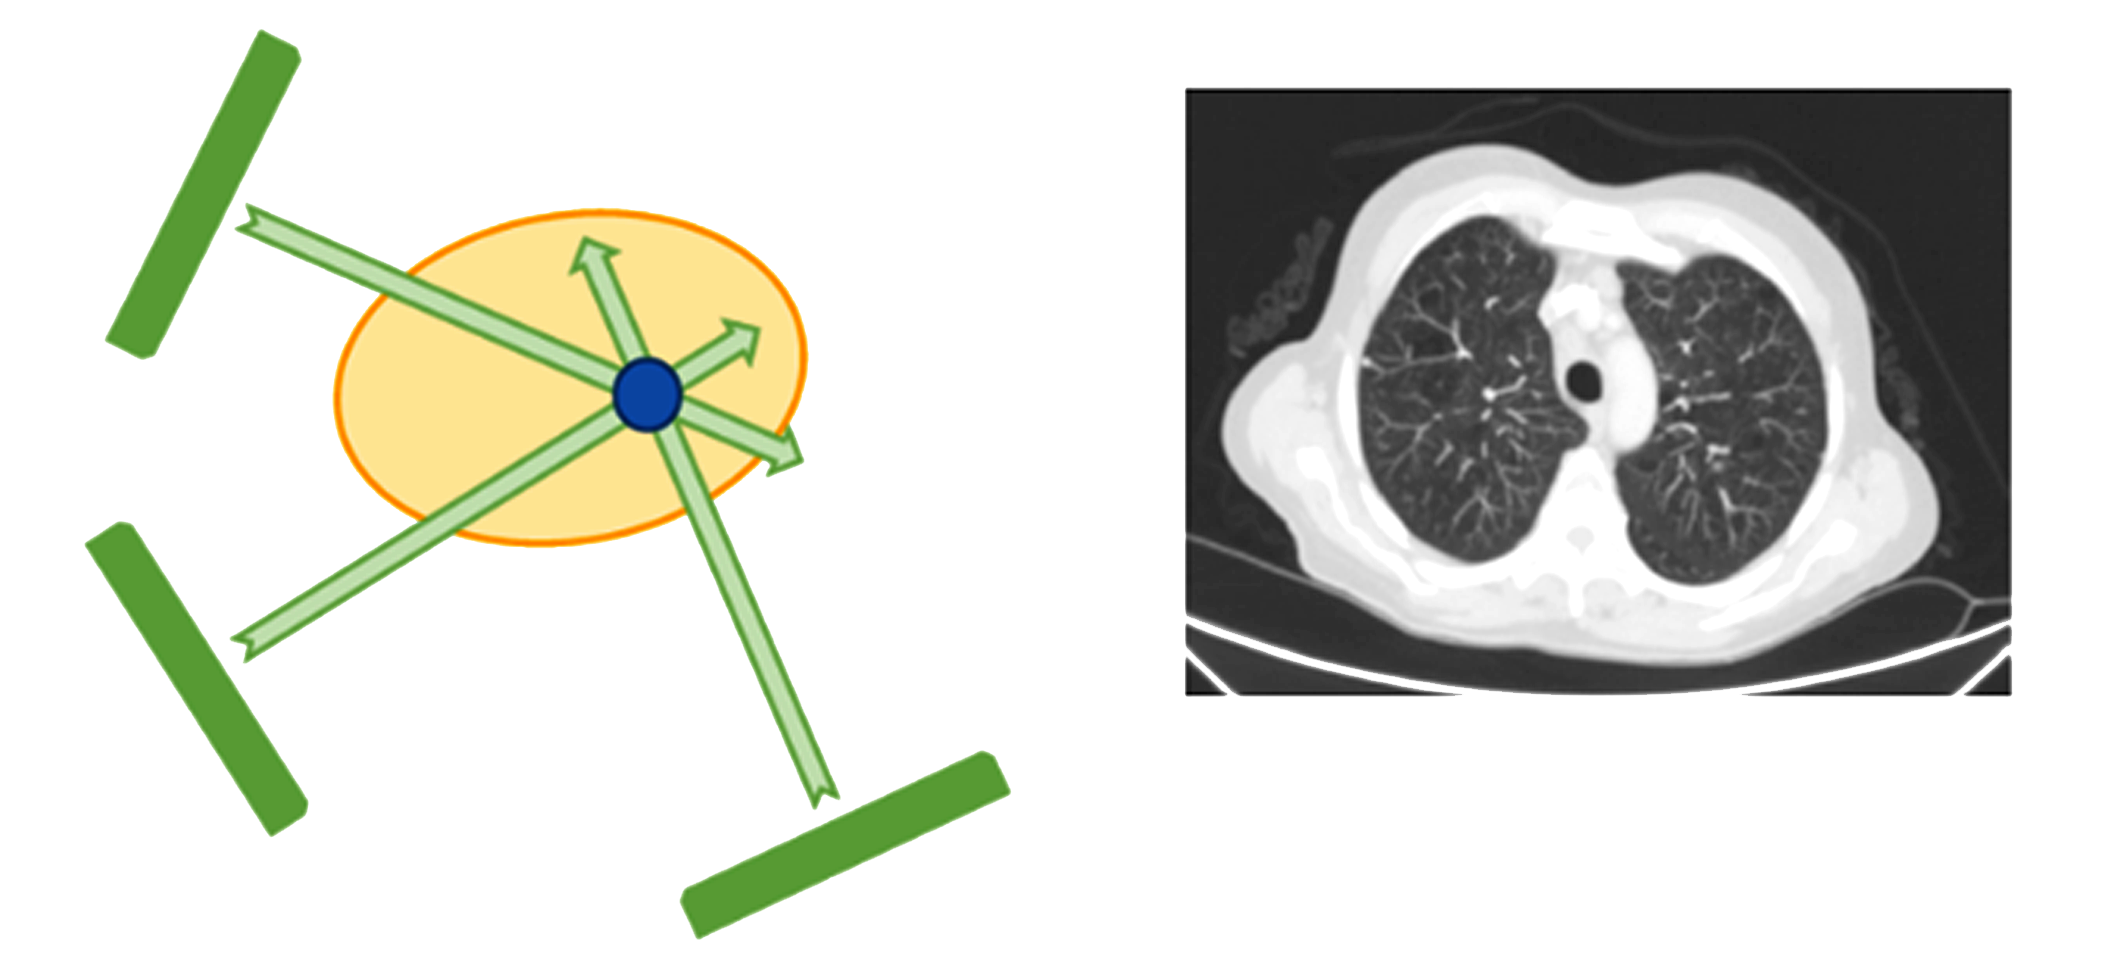  Tomografía de Rayos X: Se mide la densidad de cada parte iluminándola con rayos X por distintas trayectorias (lado izquierdo). Repitiendo el procedimiento en diferentes áreas se obtiene la imagen tomográfica del órgano (lado derecho).